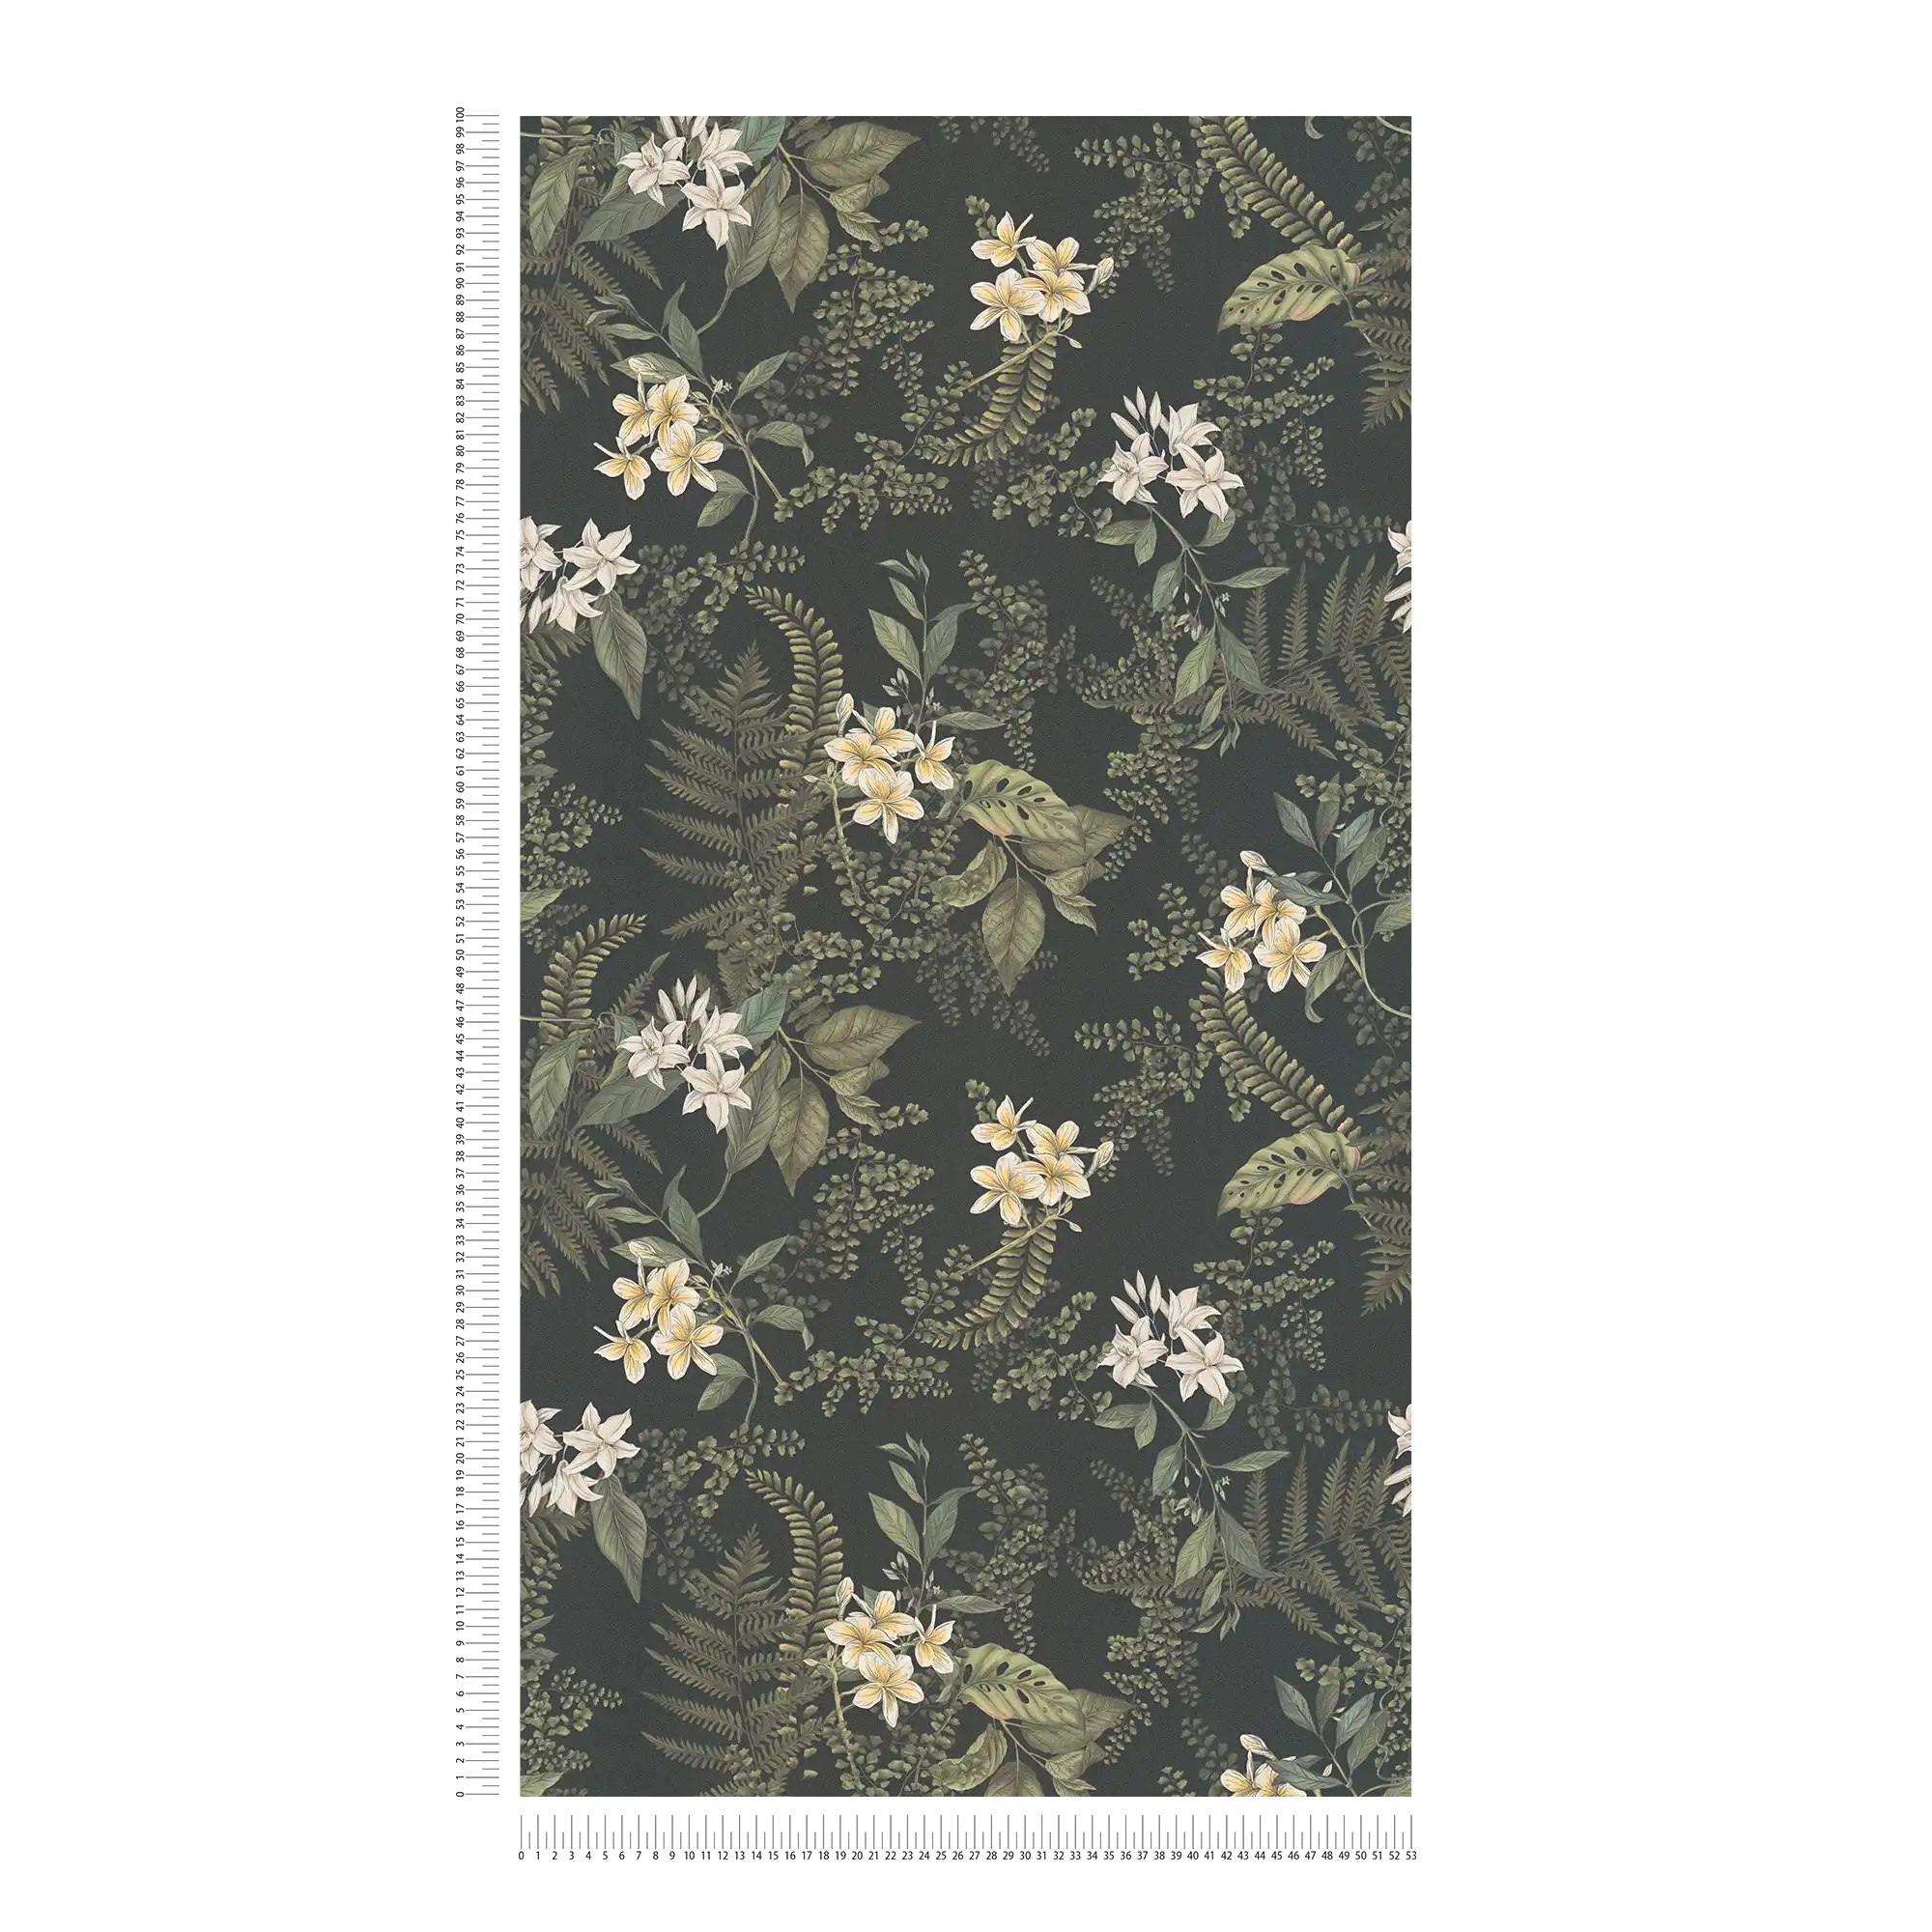             Carta da parati moderna floreale con fiori ed erbe, opaca e testurizzata - nero, verde scuro, bianco
        